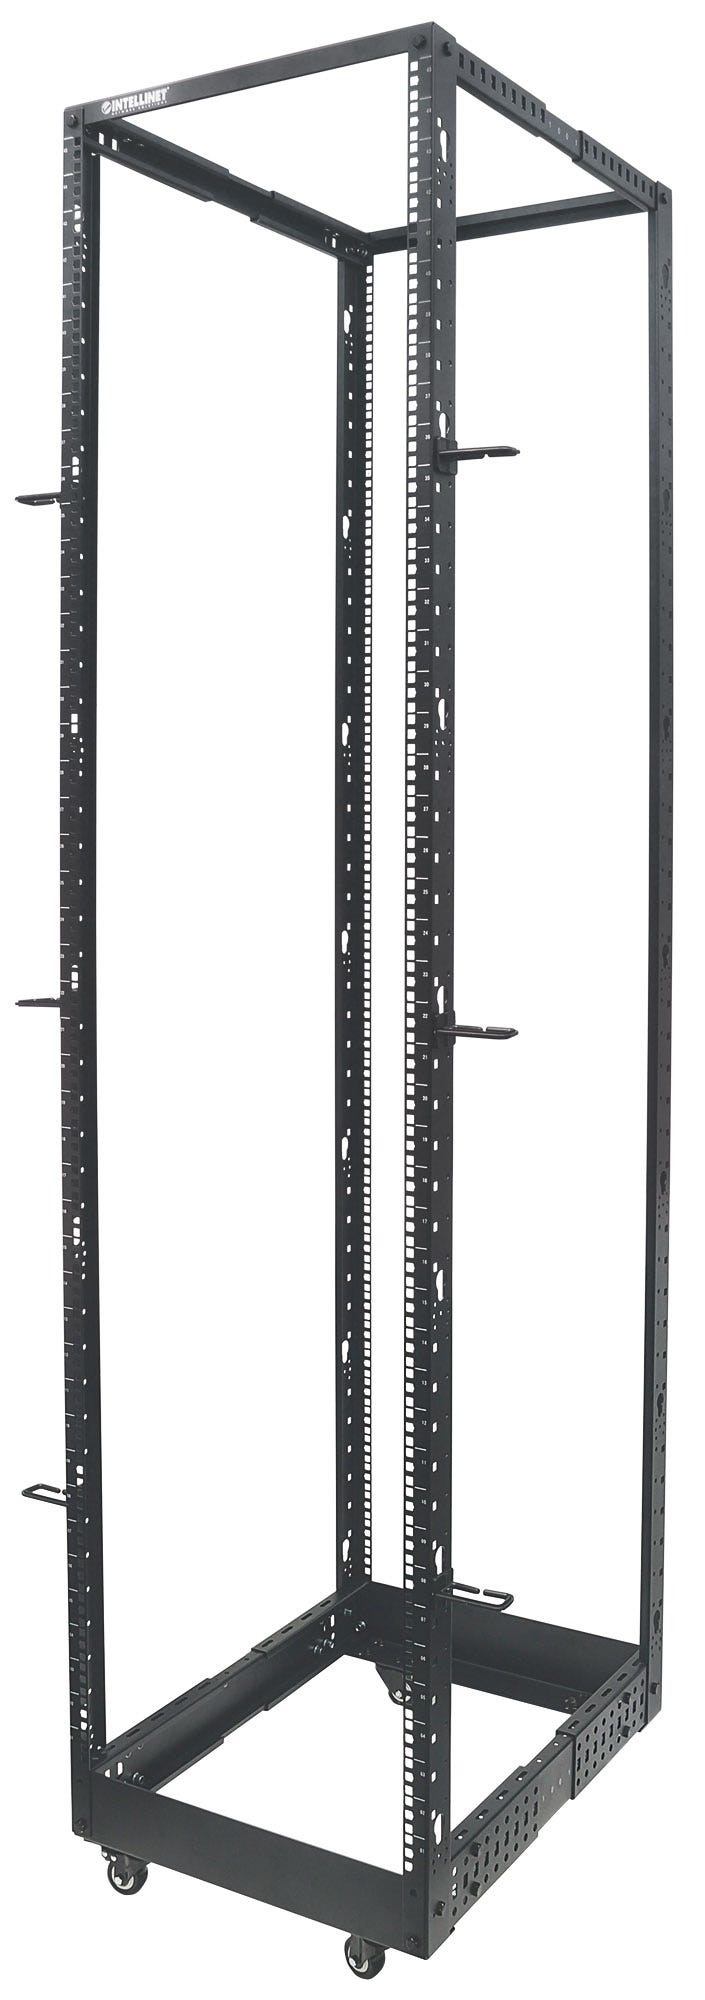 Intellinet 19" 4-Pfosten Laborgestell, 45 HE, Flatpack, schwarz - Schrank - offener Rahmen - 4 Pfosten - Schwarz, RAL 9005 - 45U - 48.3 cm (19")